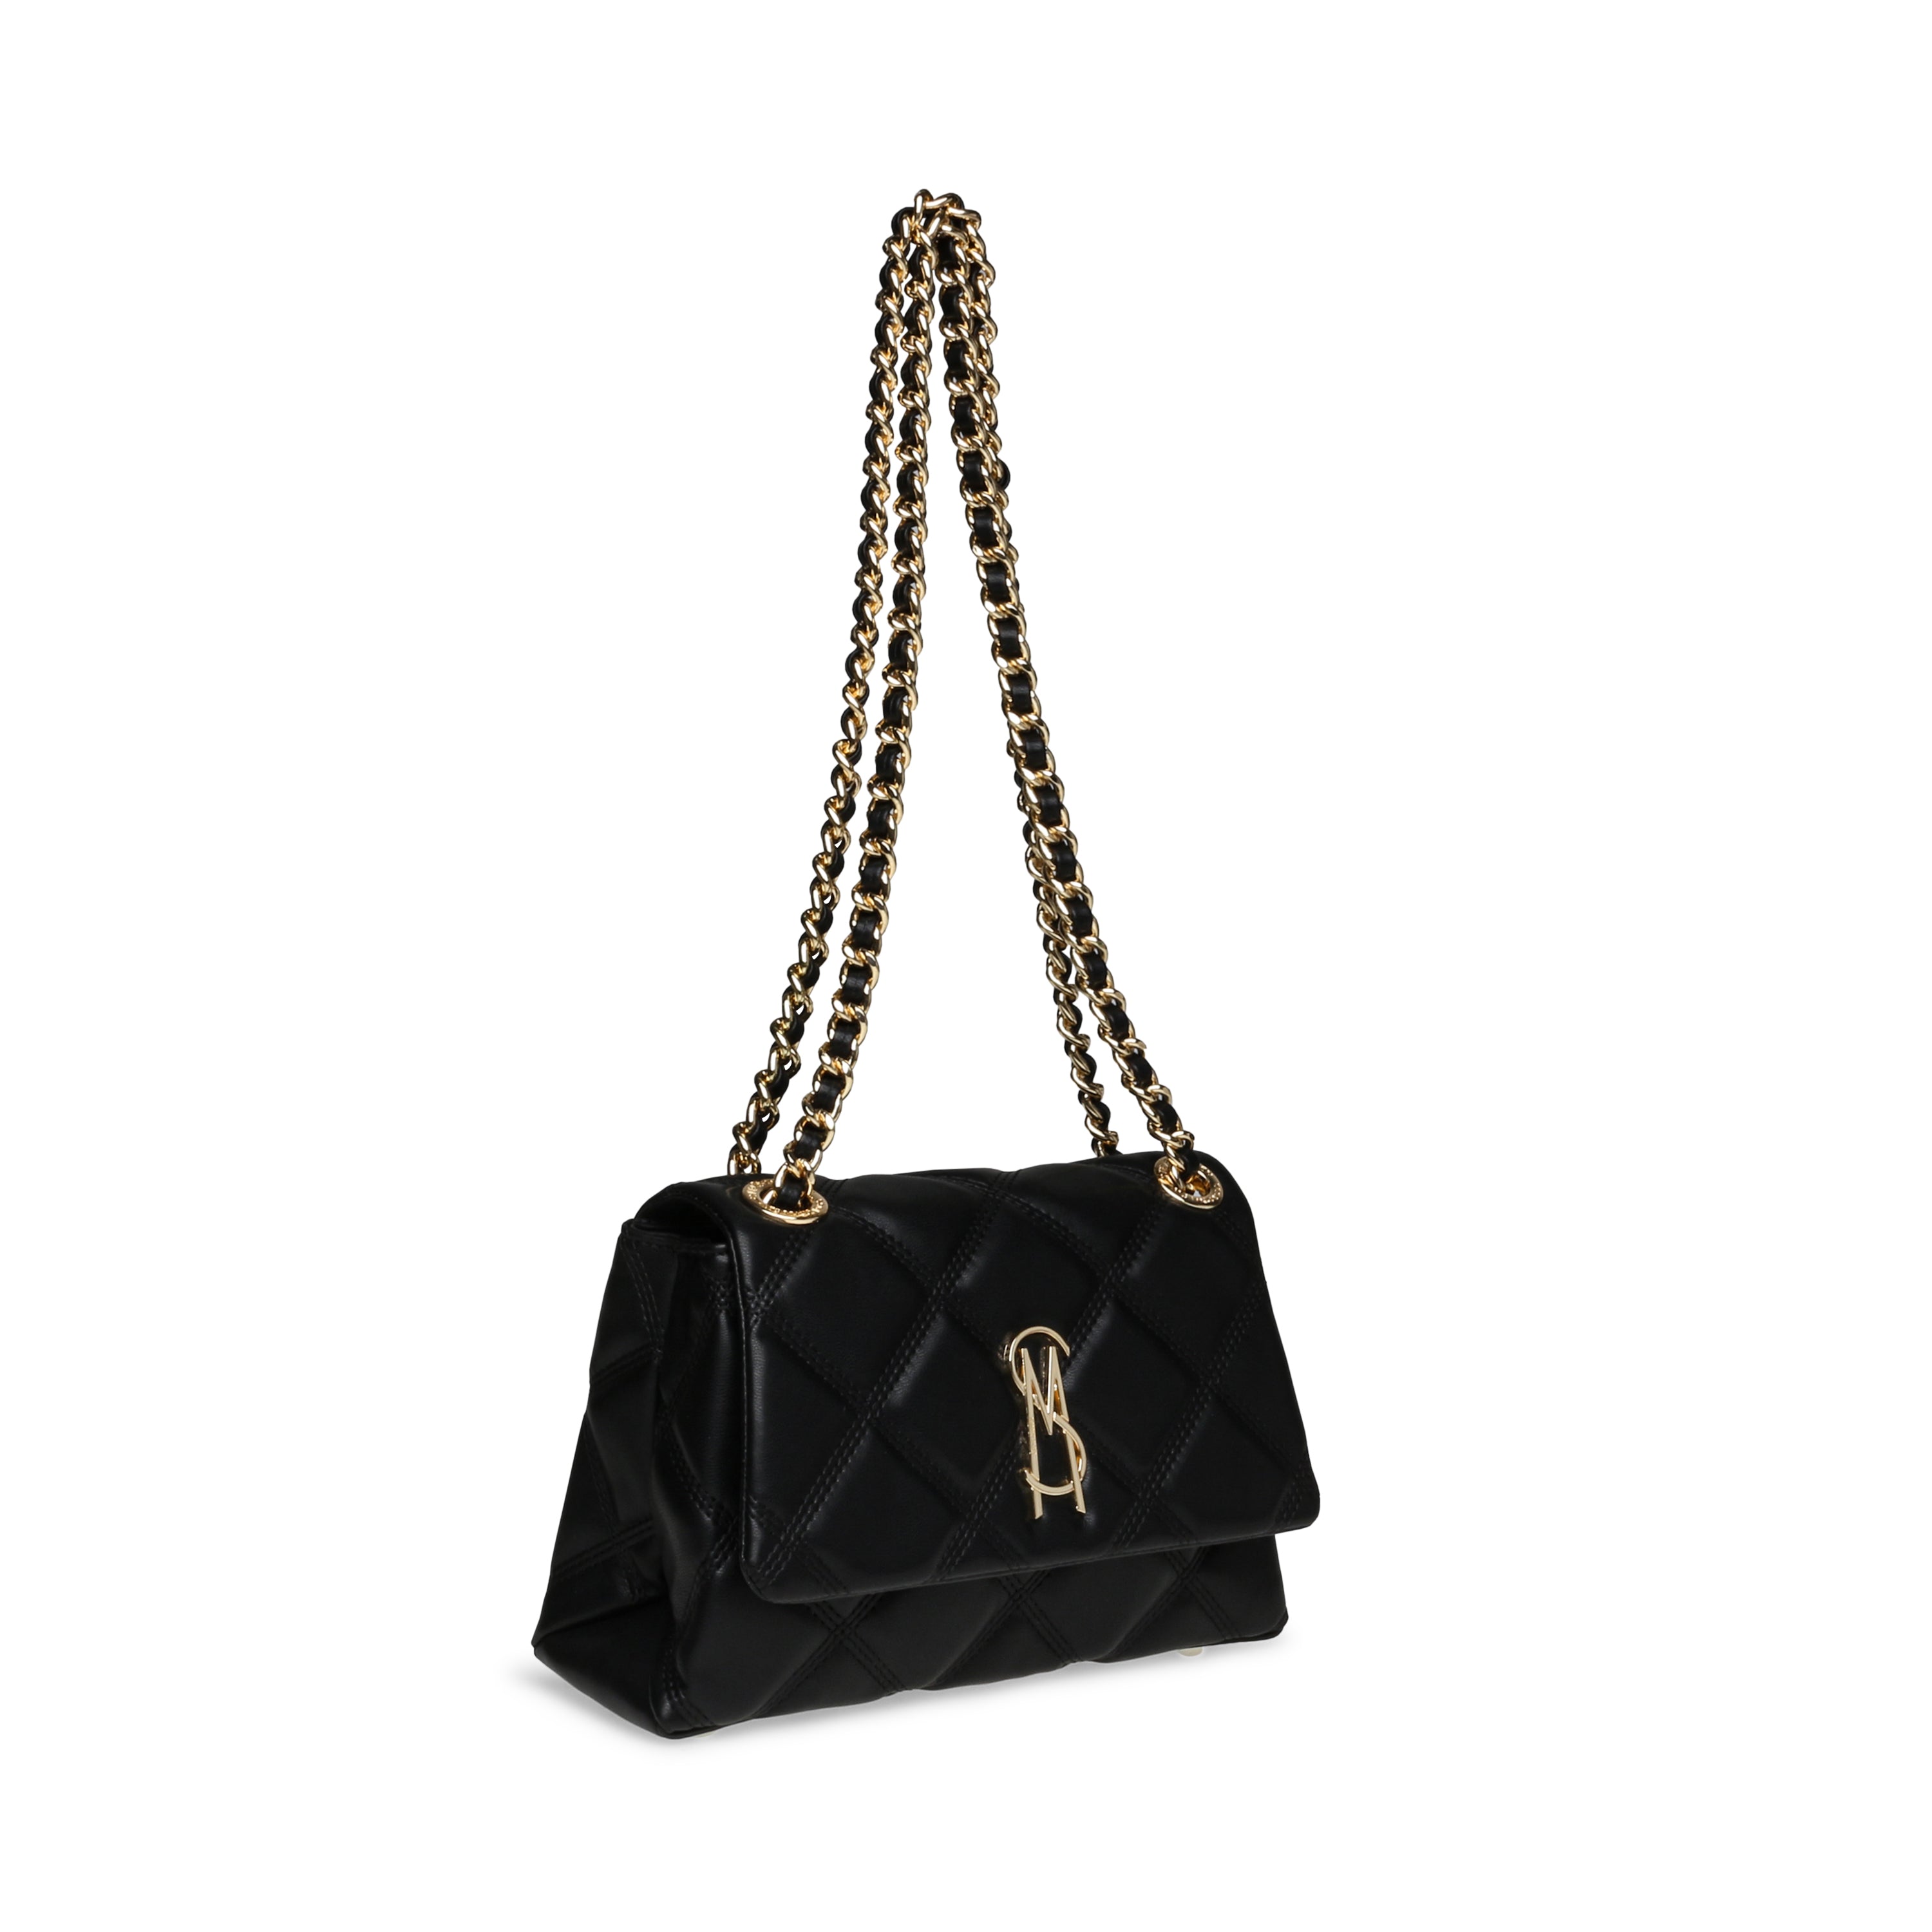 BVOLTURI BLACK/GOLD SHOULDER BAG WITH CHAIN- Hover Image